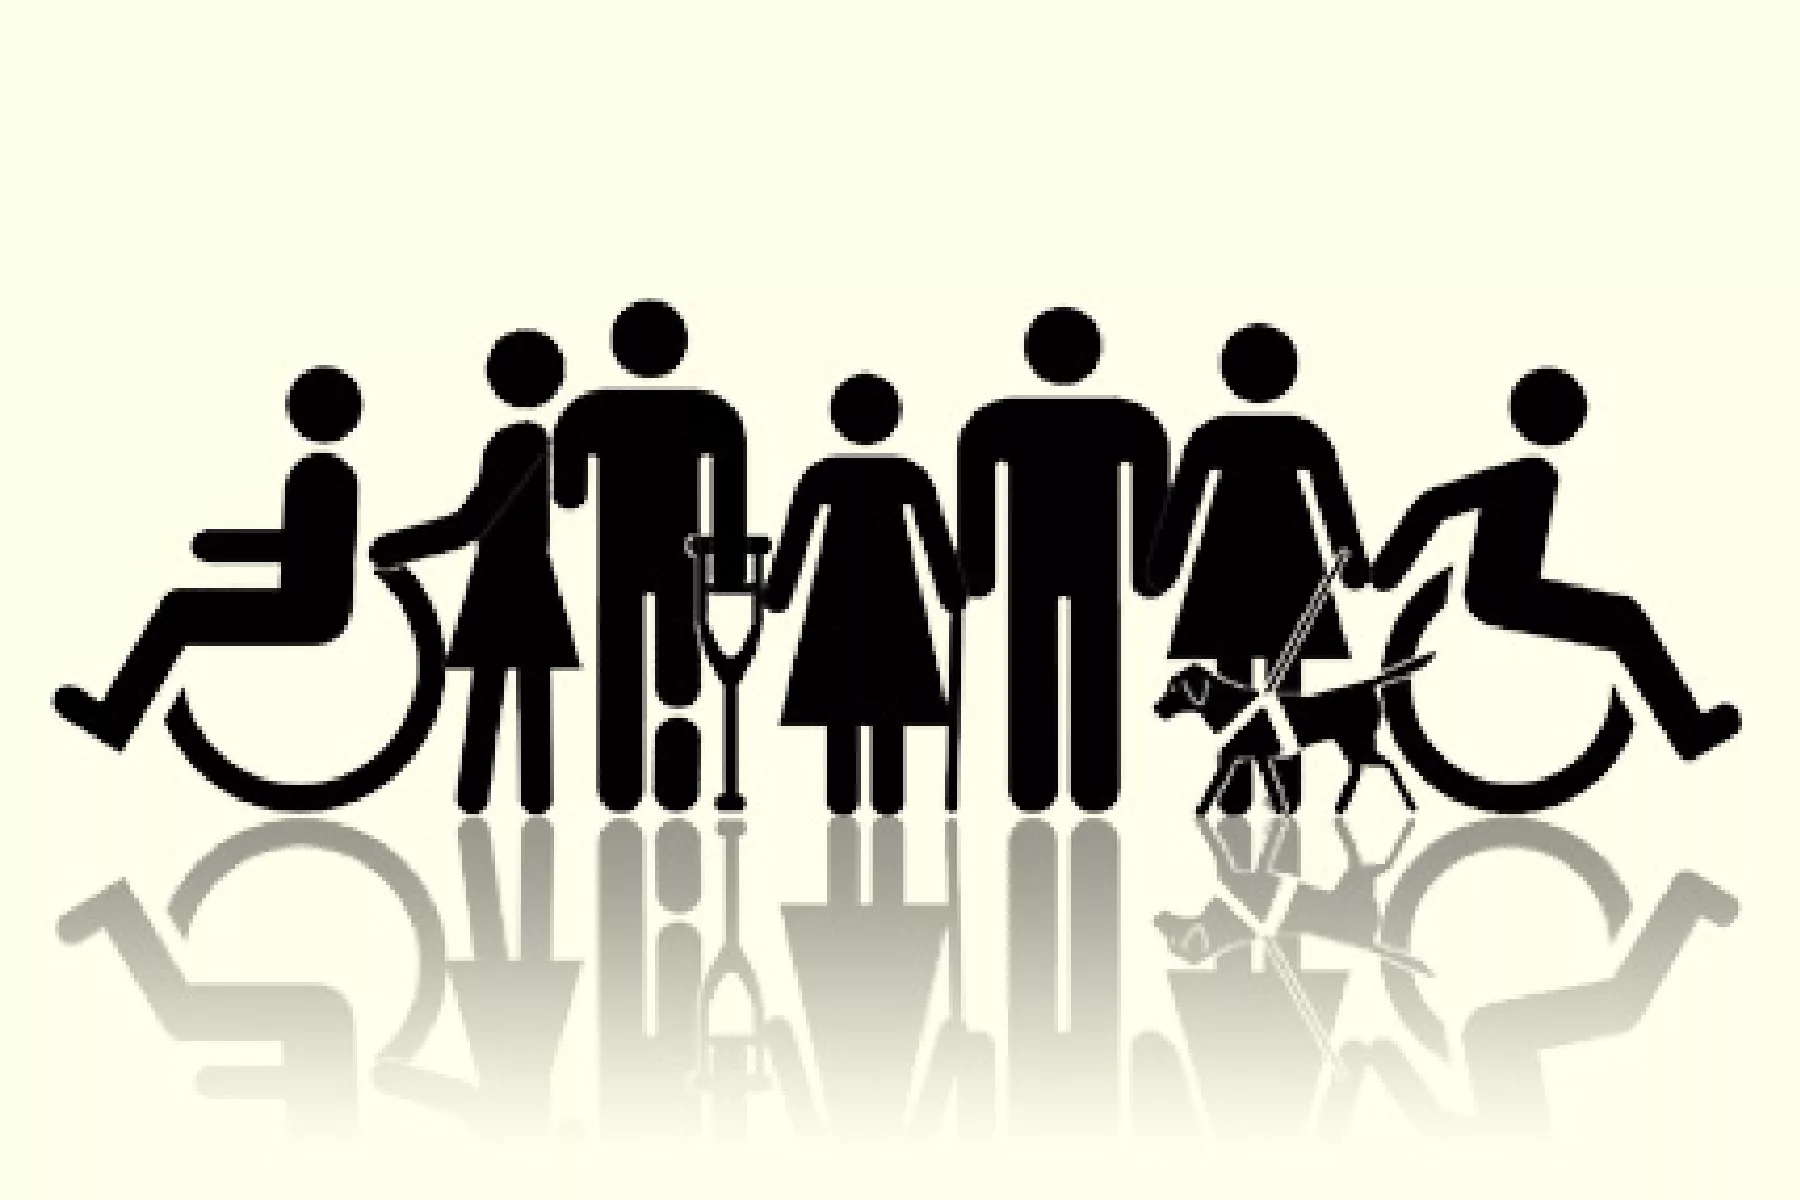 Инвалиды разных групп. Человечек инвалид. Эмблема с ограниченными возможностями. Инвалидность. Люди с ОВЗ.